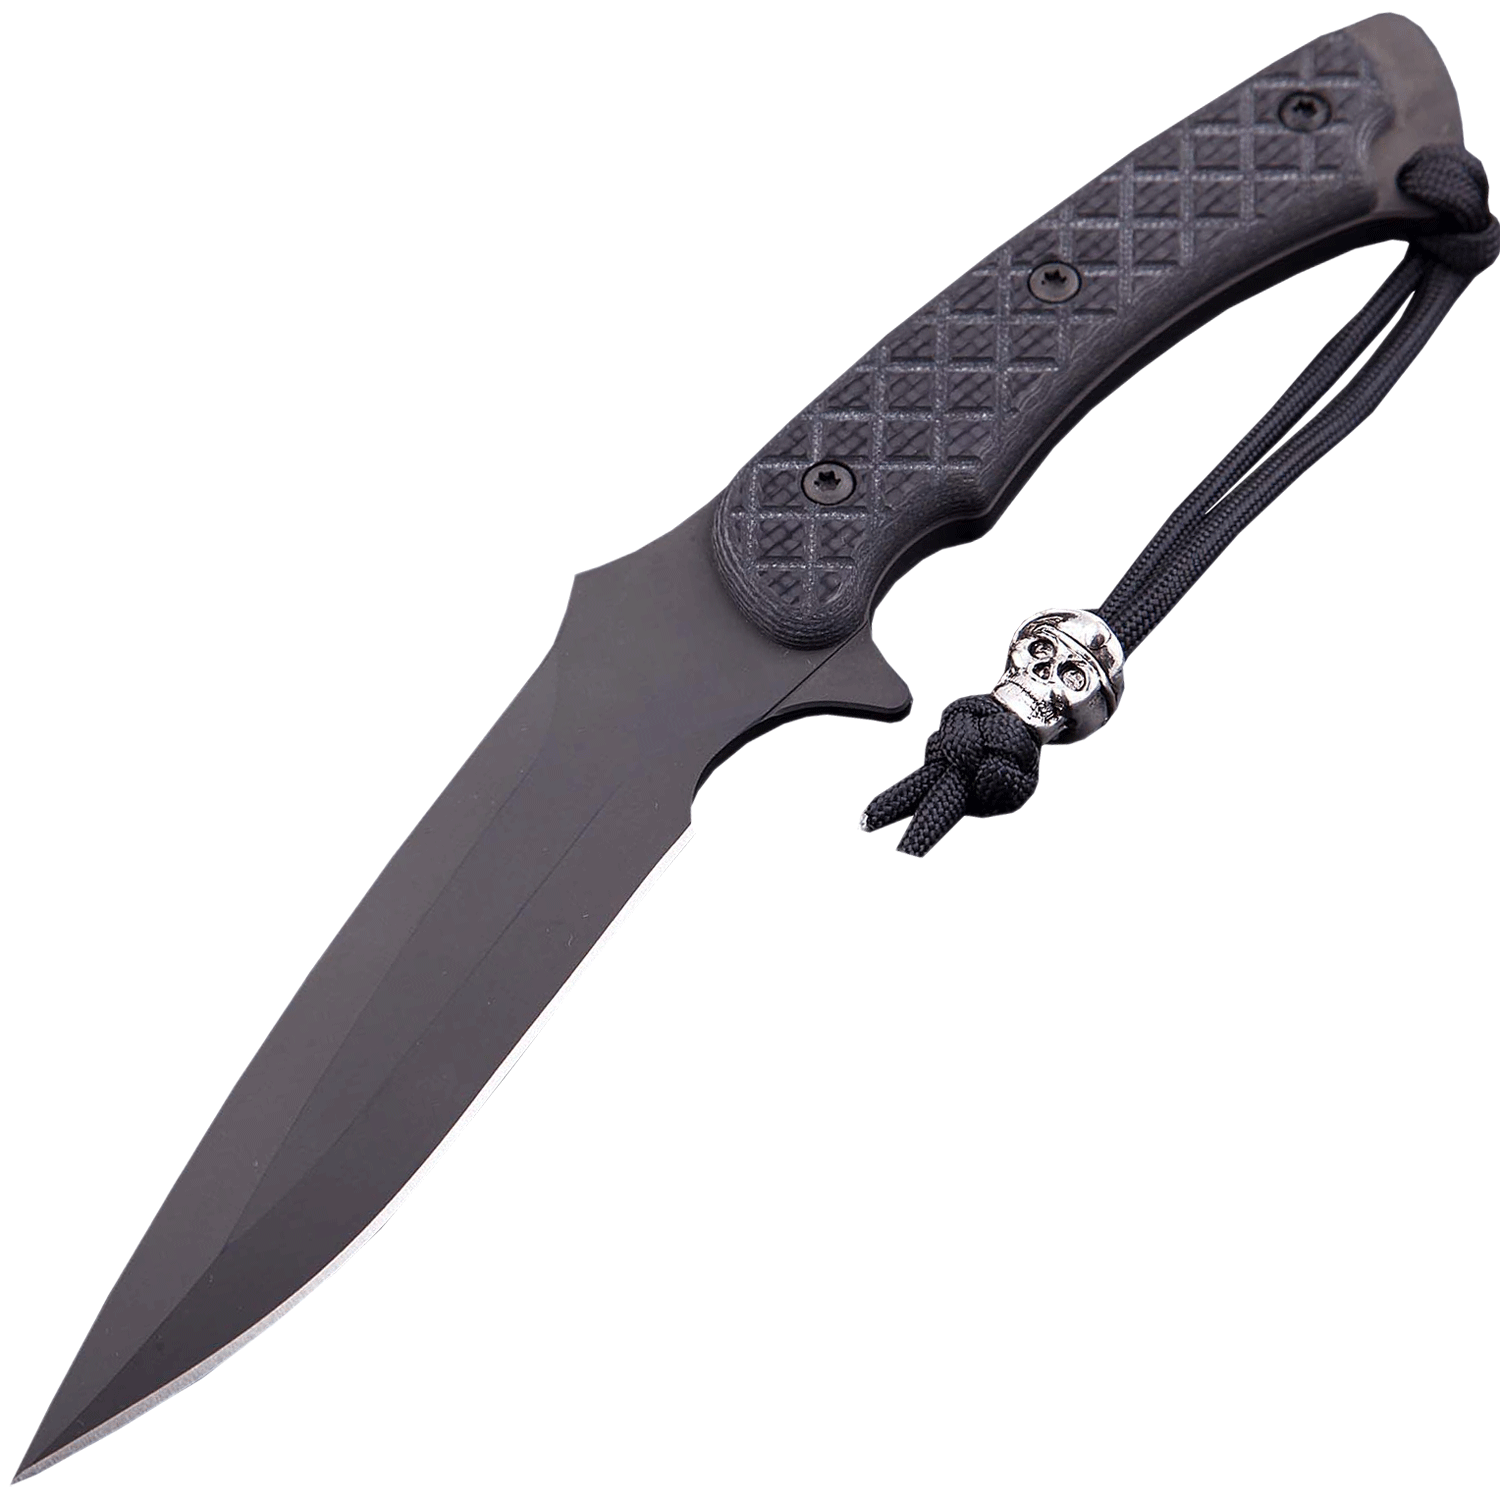 Нож с фиксированным клинком Spartan Blades Ares, сталь CPM-S35VN, рукоять Carbon fiber, чехол черный